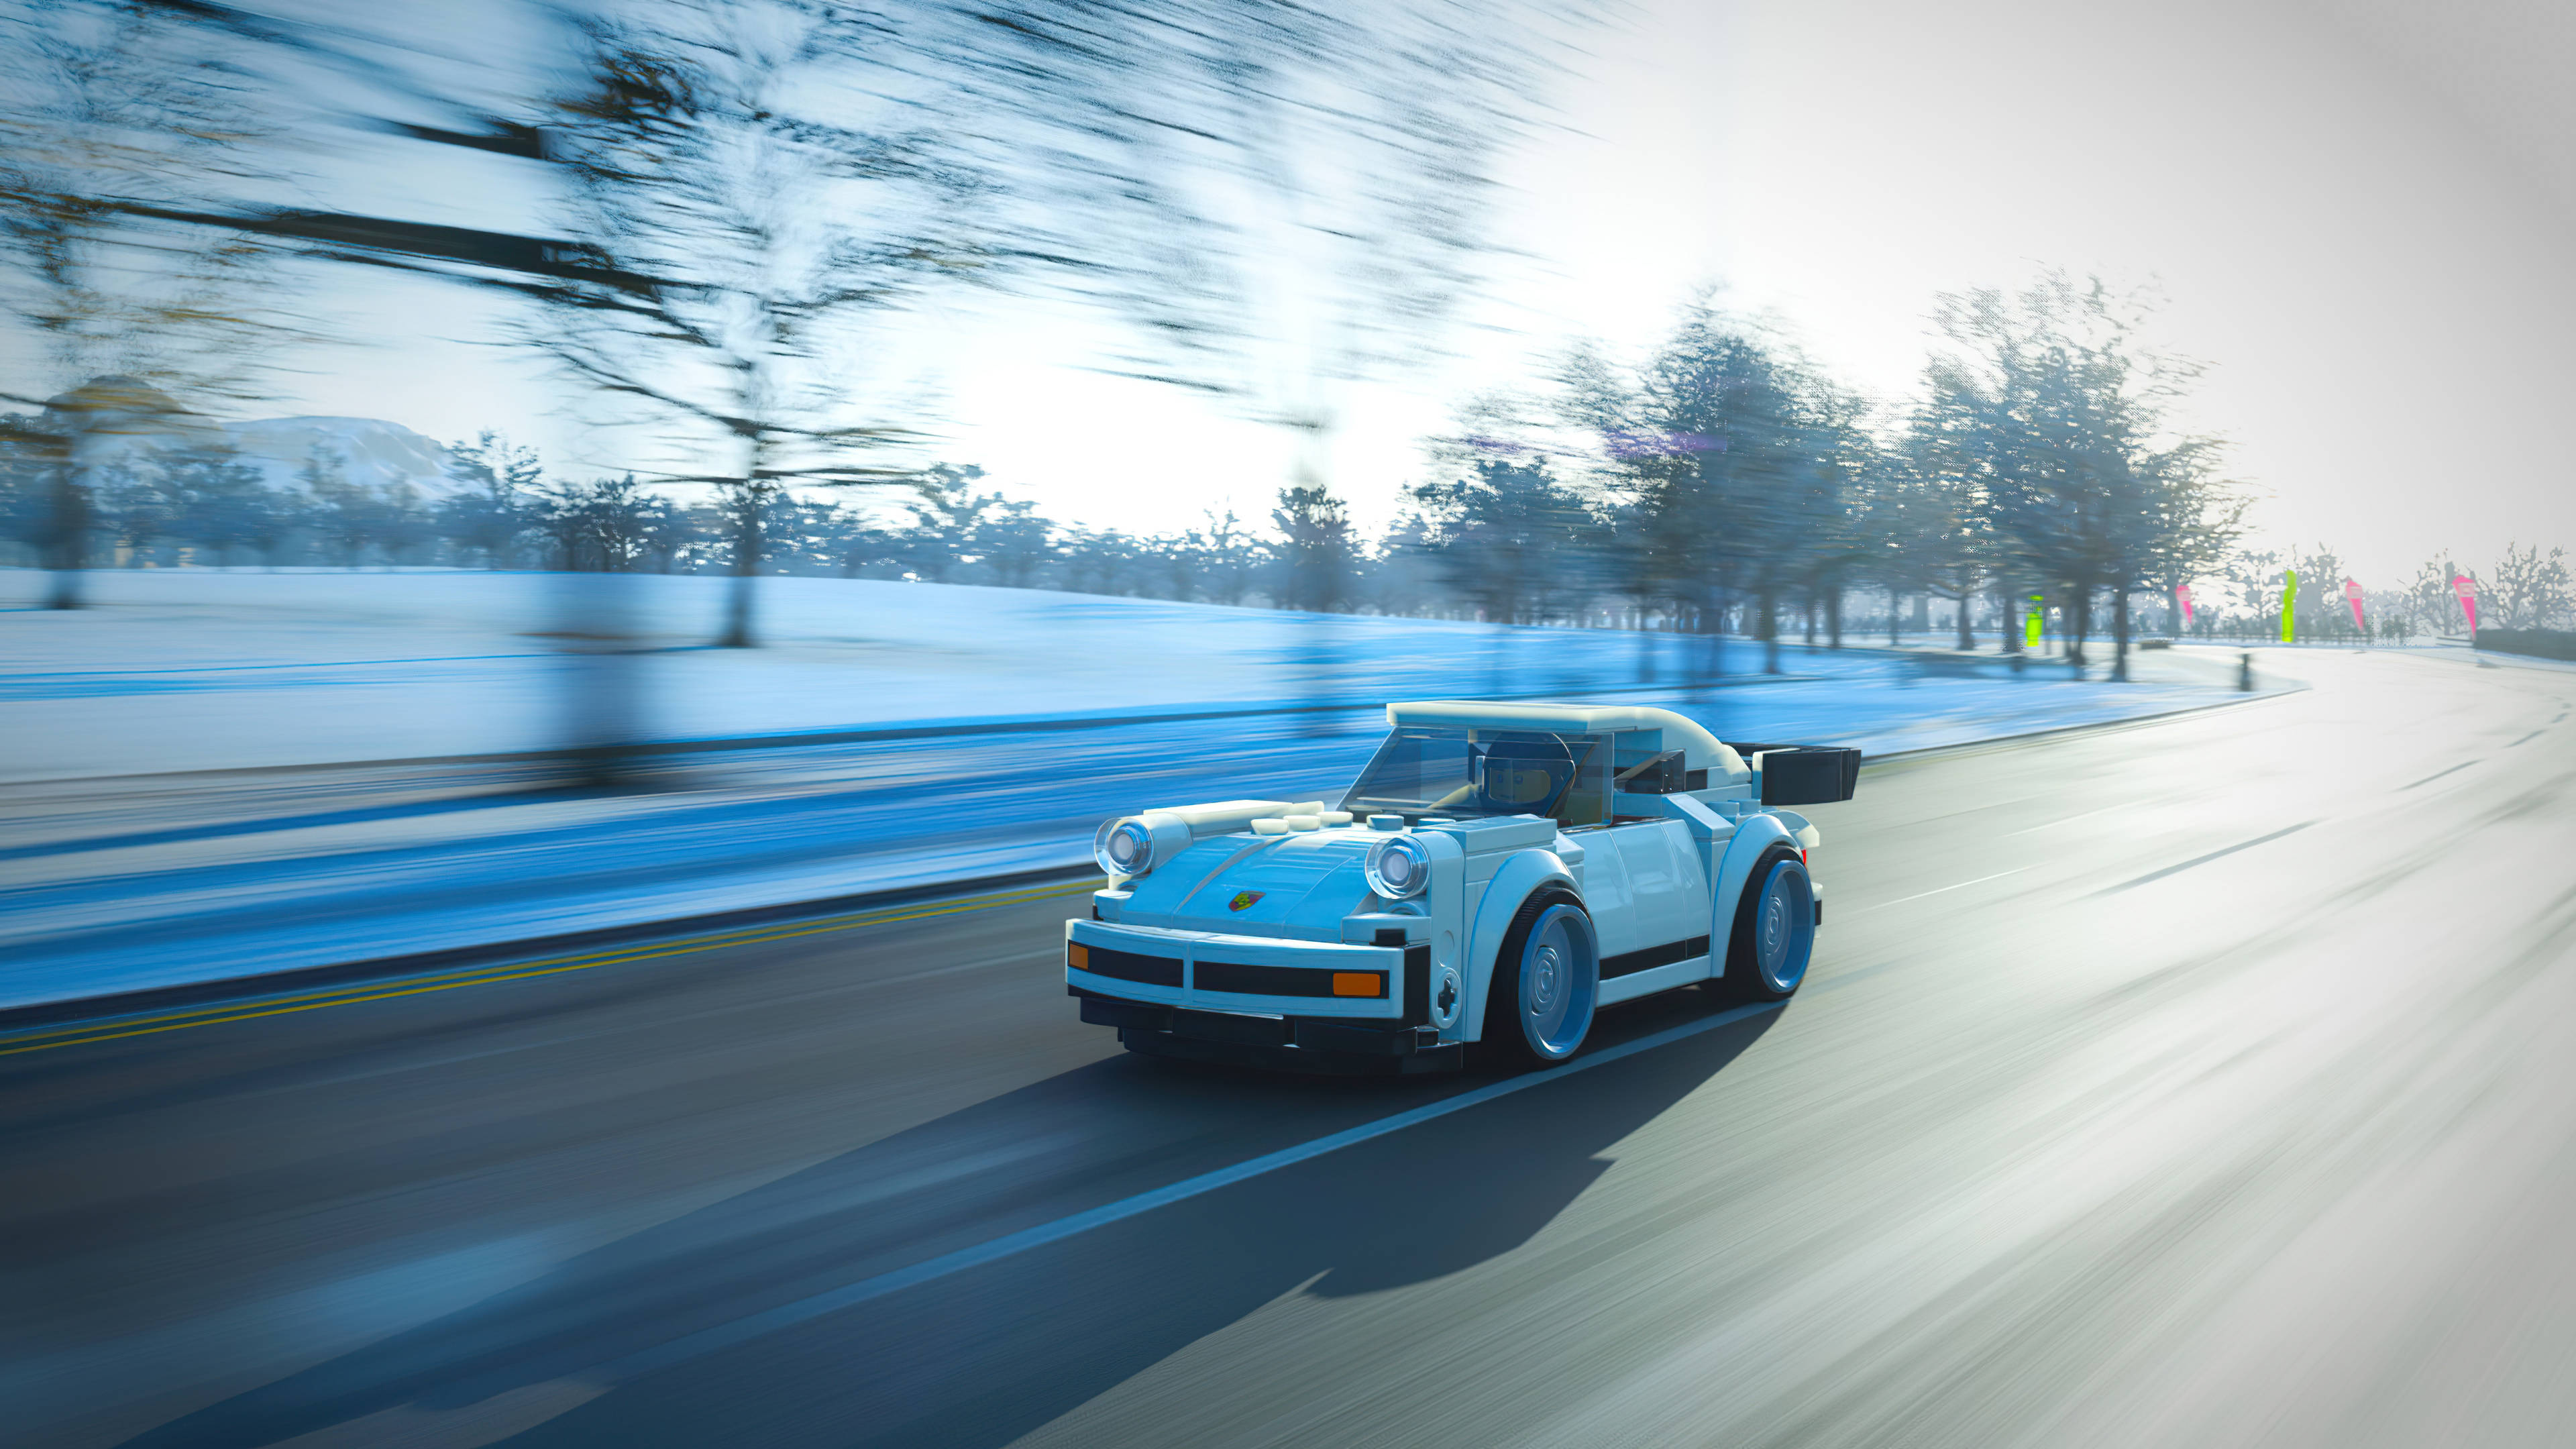 Với hình nền 4k của Forza Horizon 4, Porsche 911 và Lego, bạn sẽ được trải nghiệm những hình ảnh đẹp và sống động nhất về thế giới ô tô. Hãy điểm tên những chiếc xe đua nổi tiếng trong Forza Horizon 4 và cảm nhận trọn vẹn vẻ đẹp của Porsche 911 và Lego.